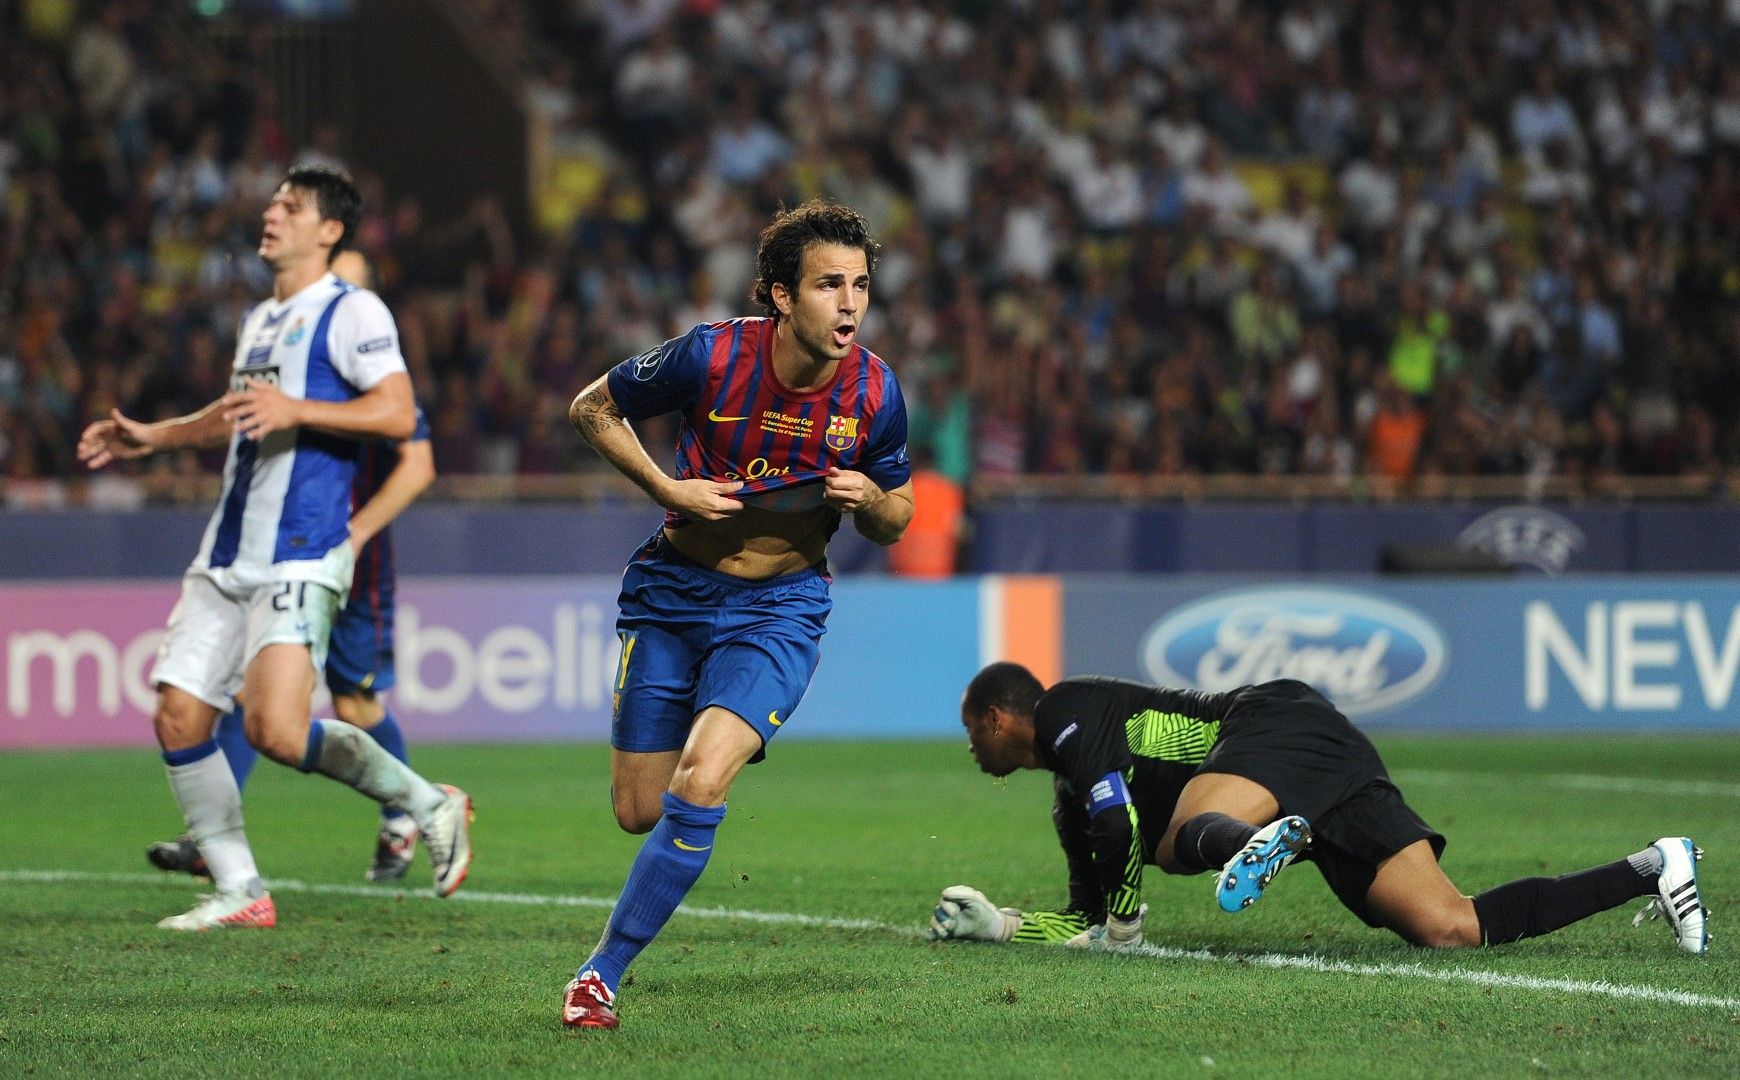 2011 г. - Сеск Фабрегас, завърнал се в родната "Барселона", бележи във вратата на "Порто" и праща купата в Каталуня (2:0).